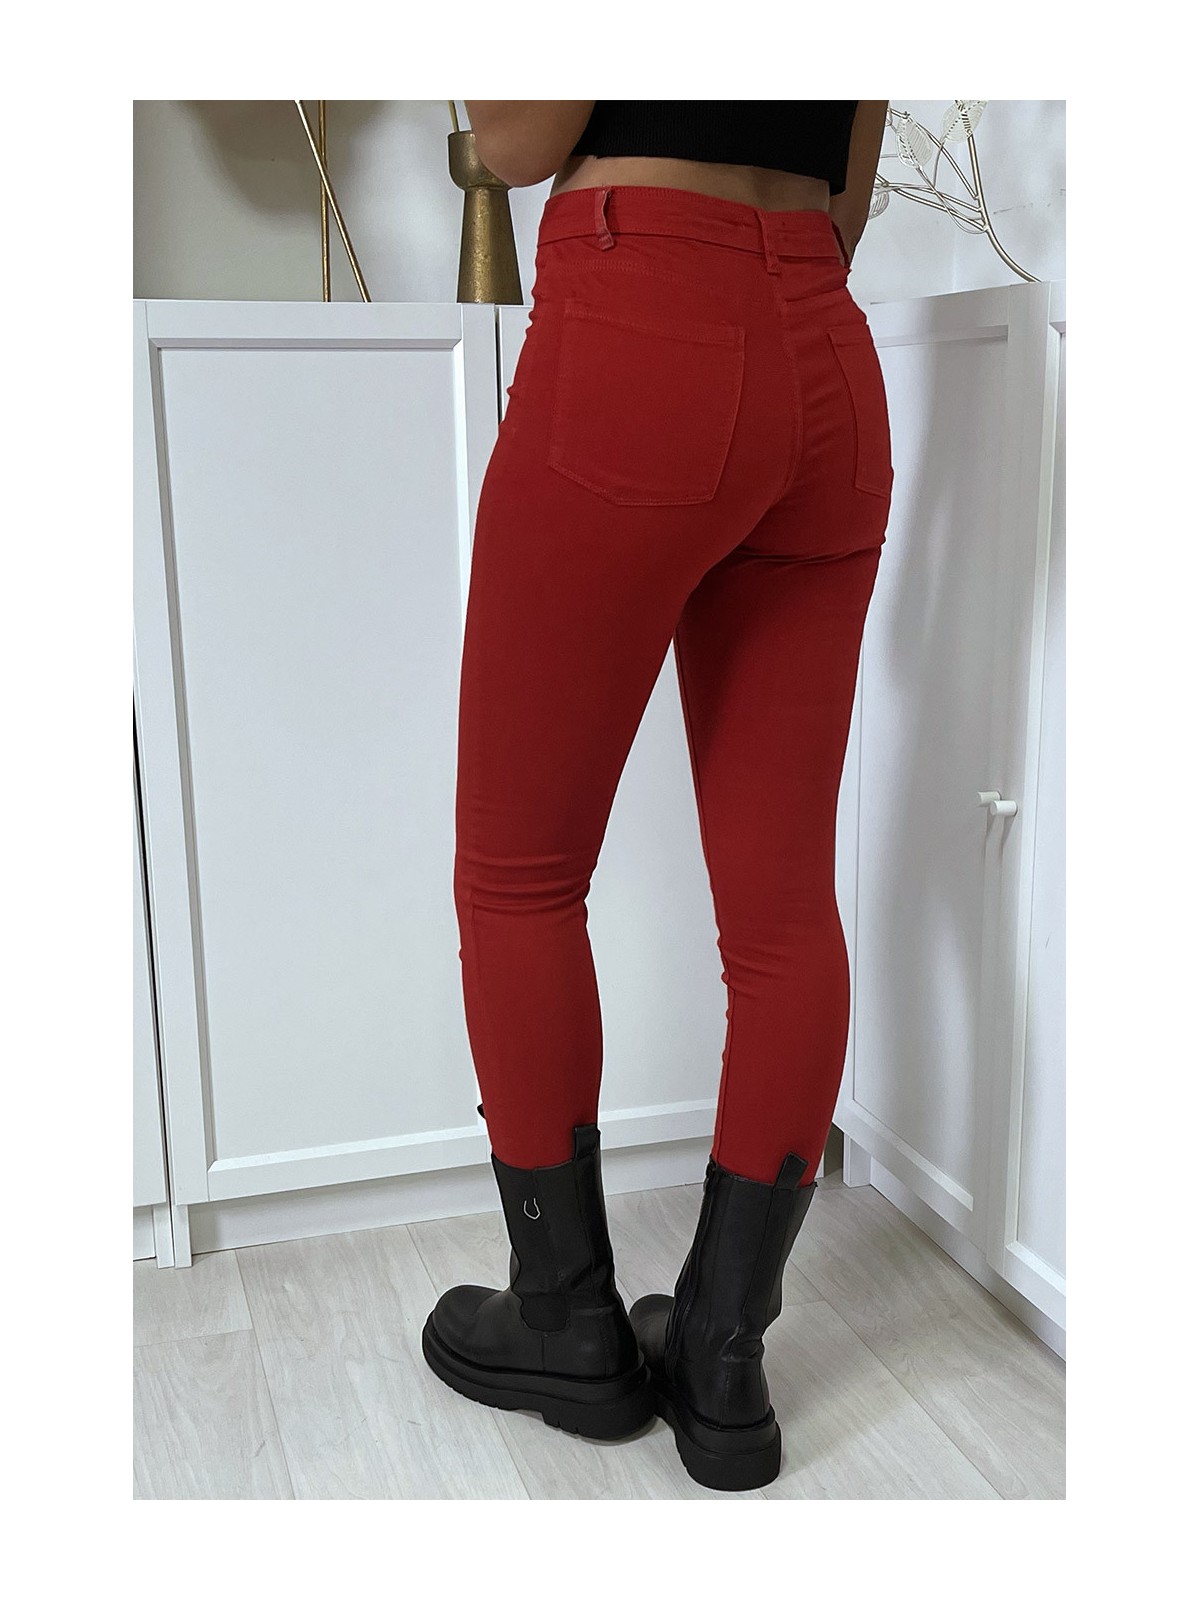 Jean slim rouge taille haute avec poches arrières - 1